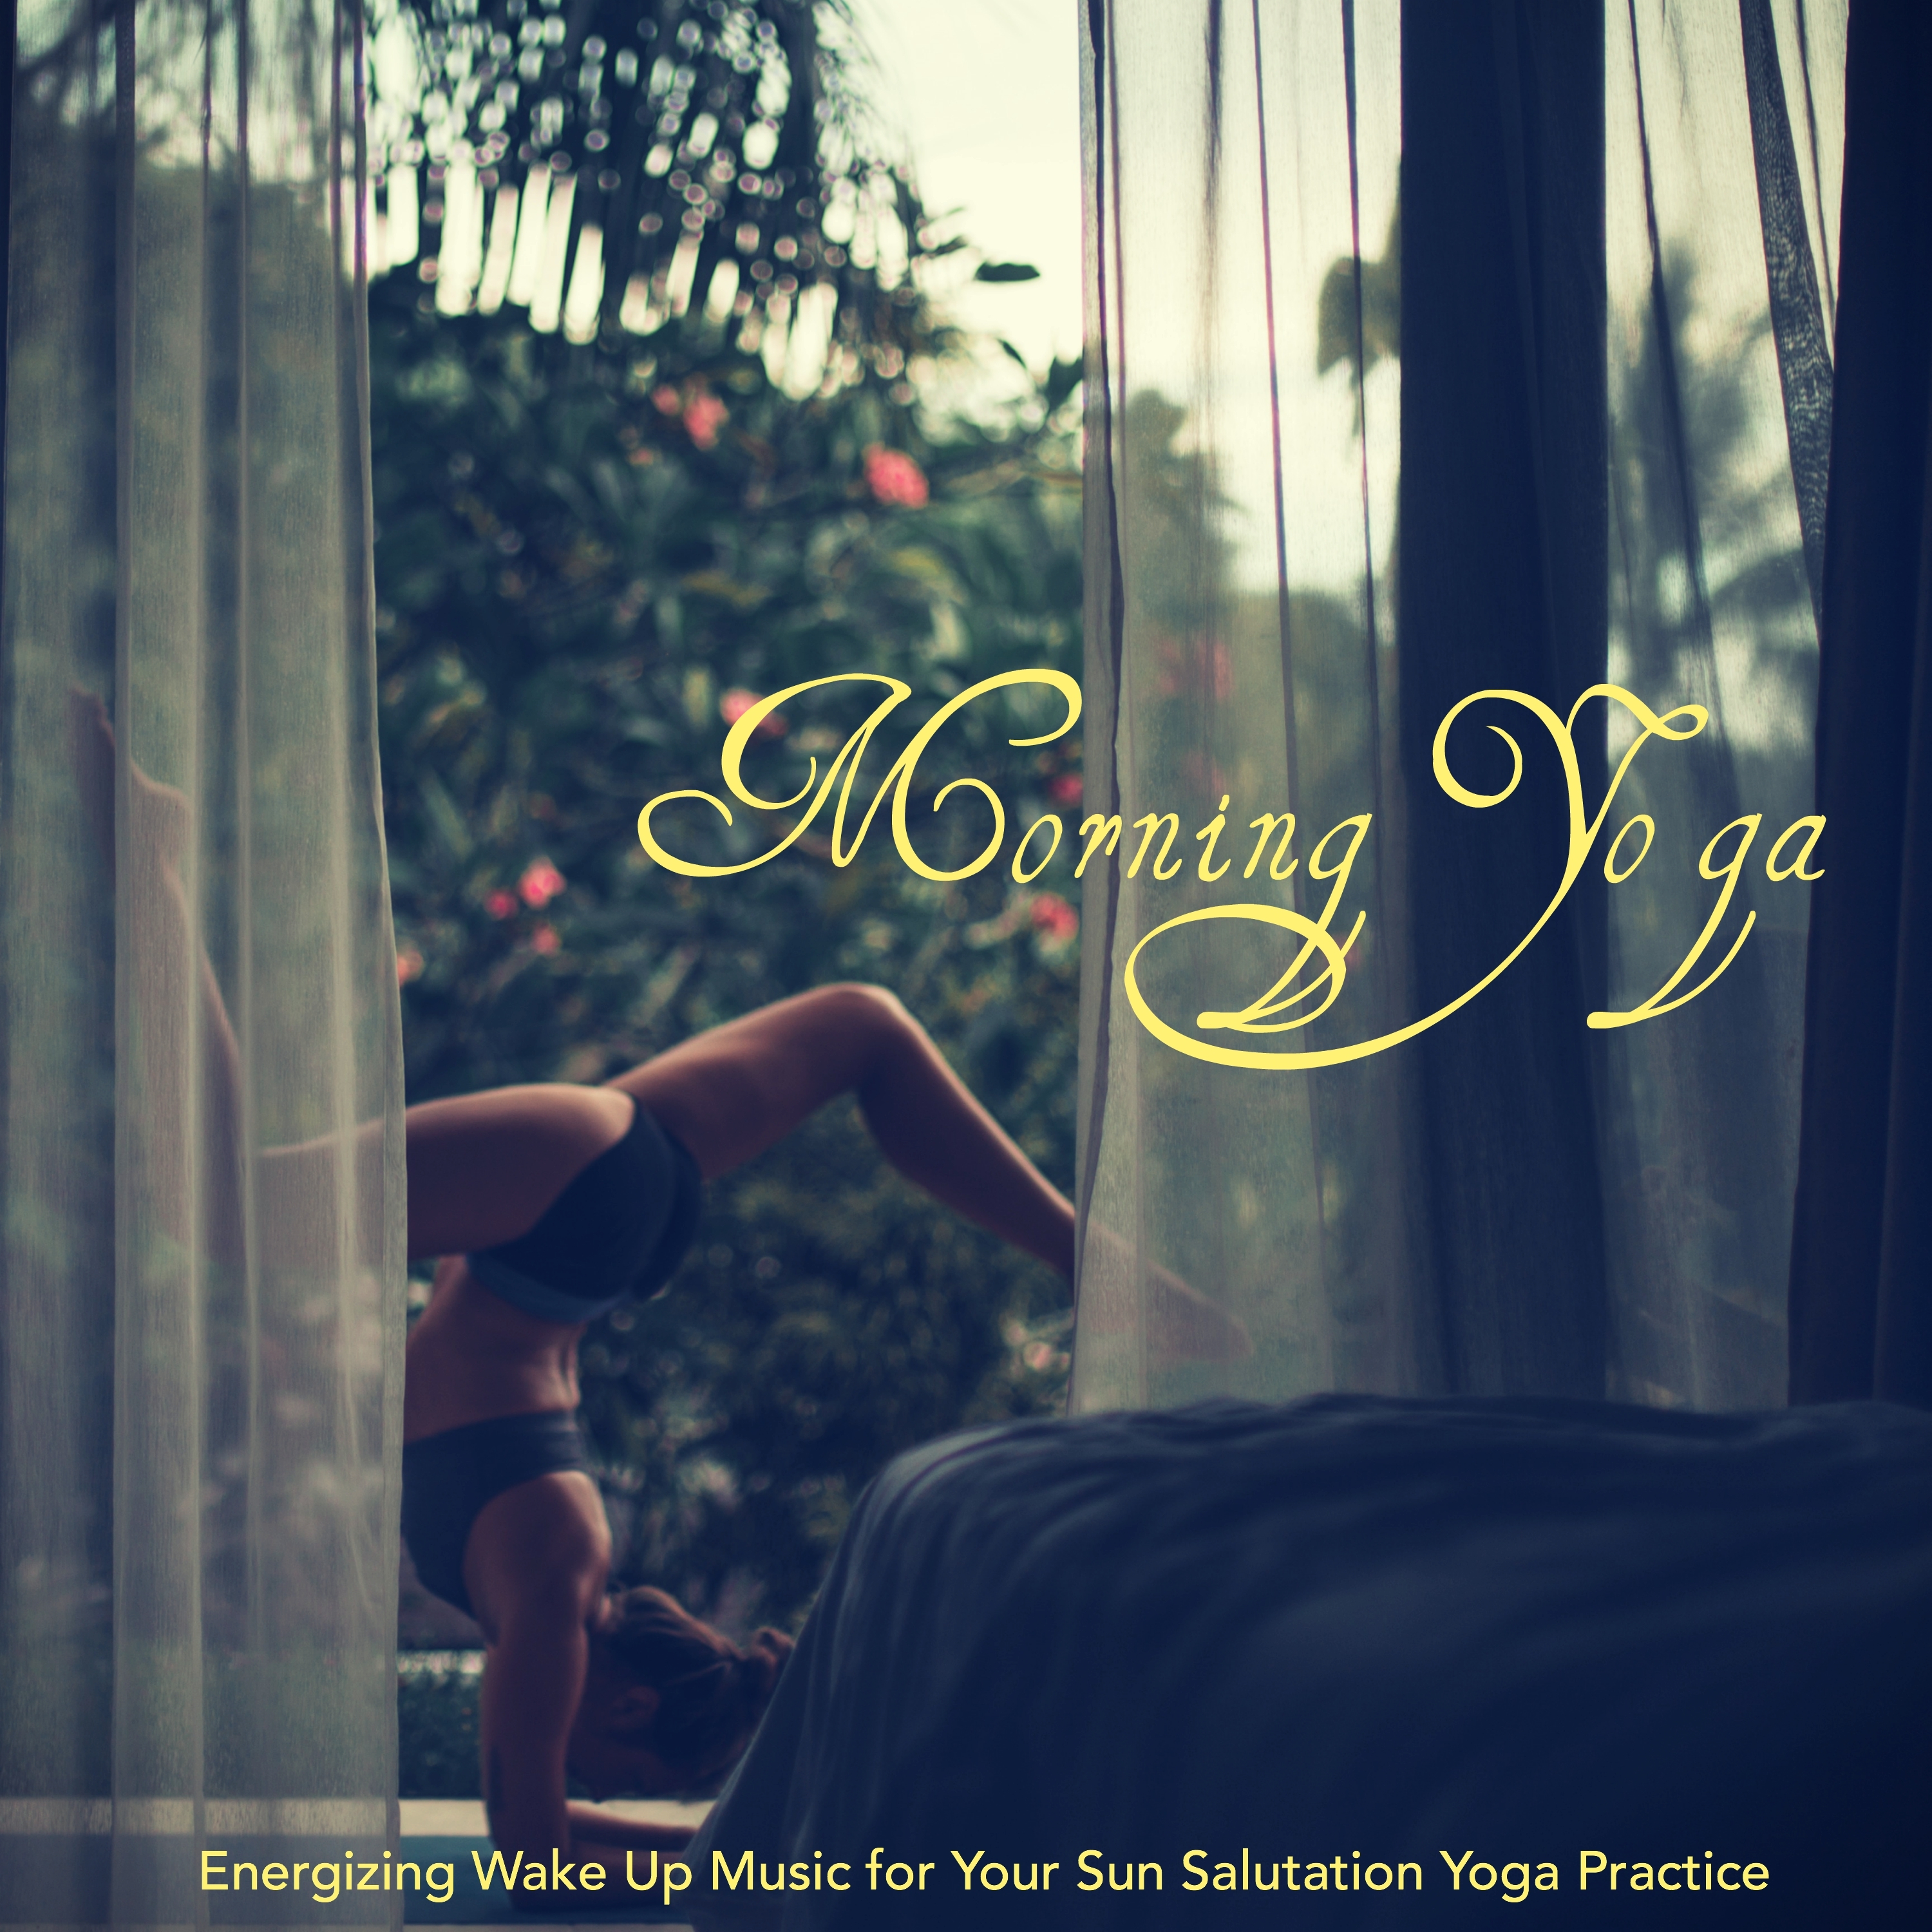 Lotus - Yoga Routine